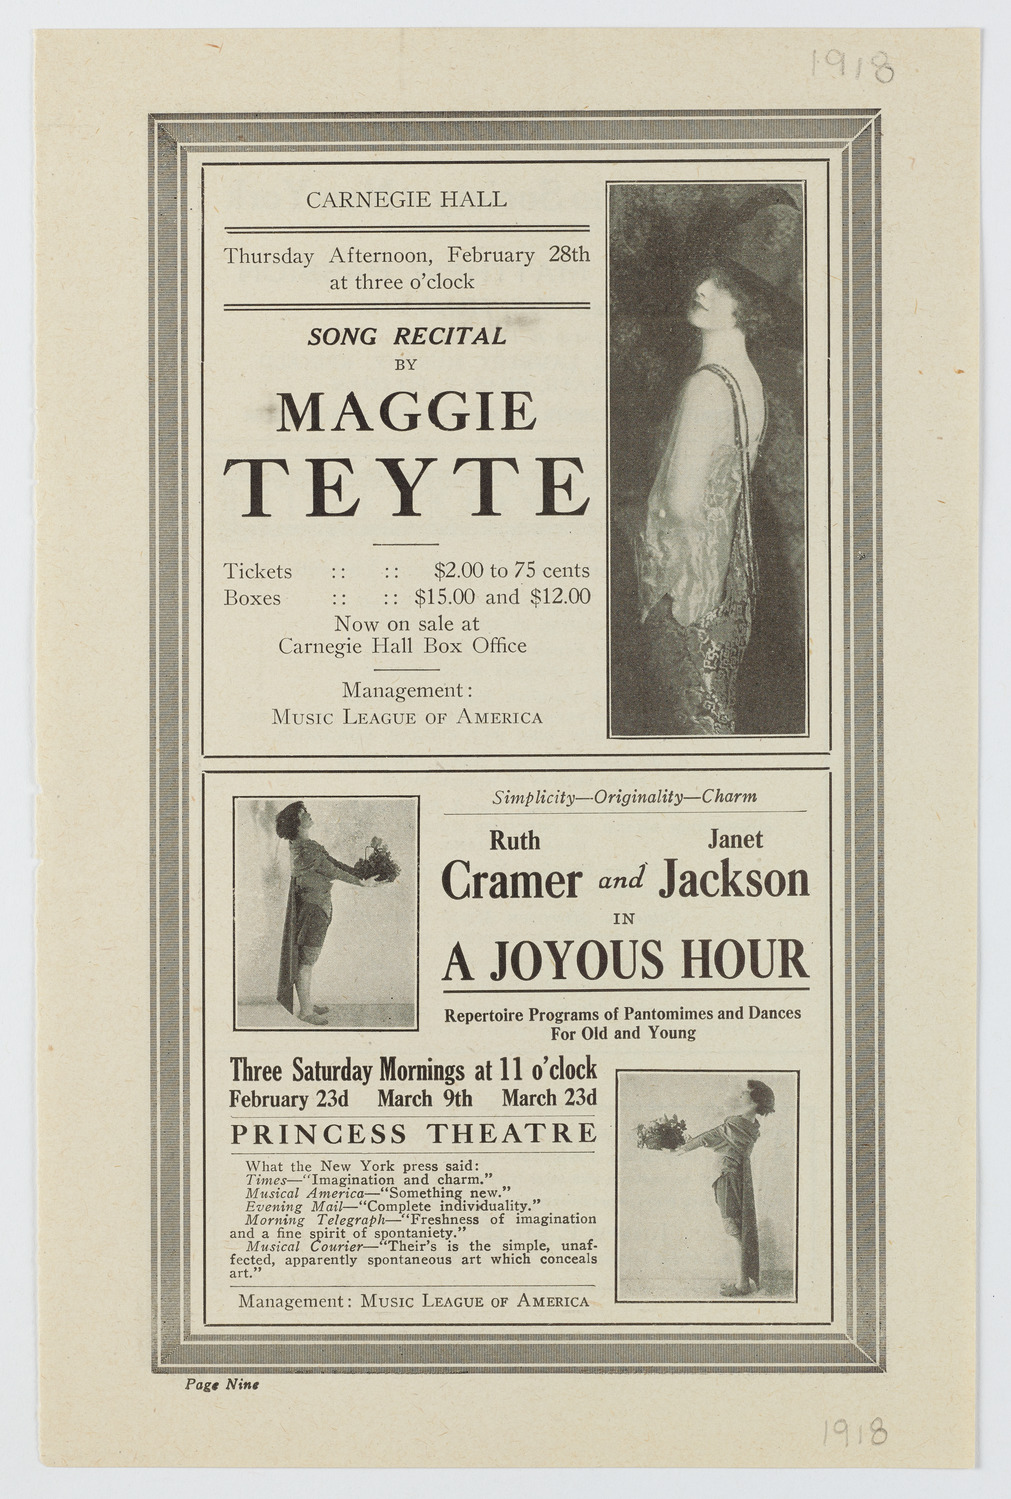 Maggie Teyte, Soprano, February 28, 1918